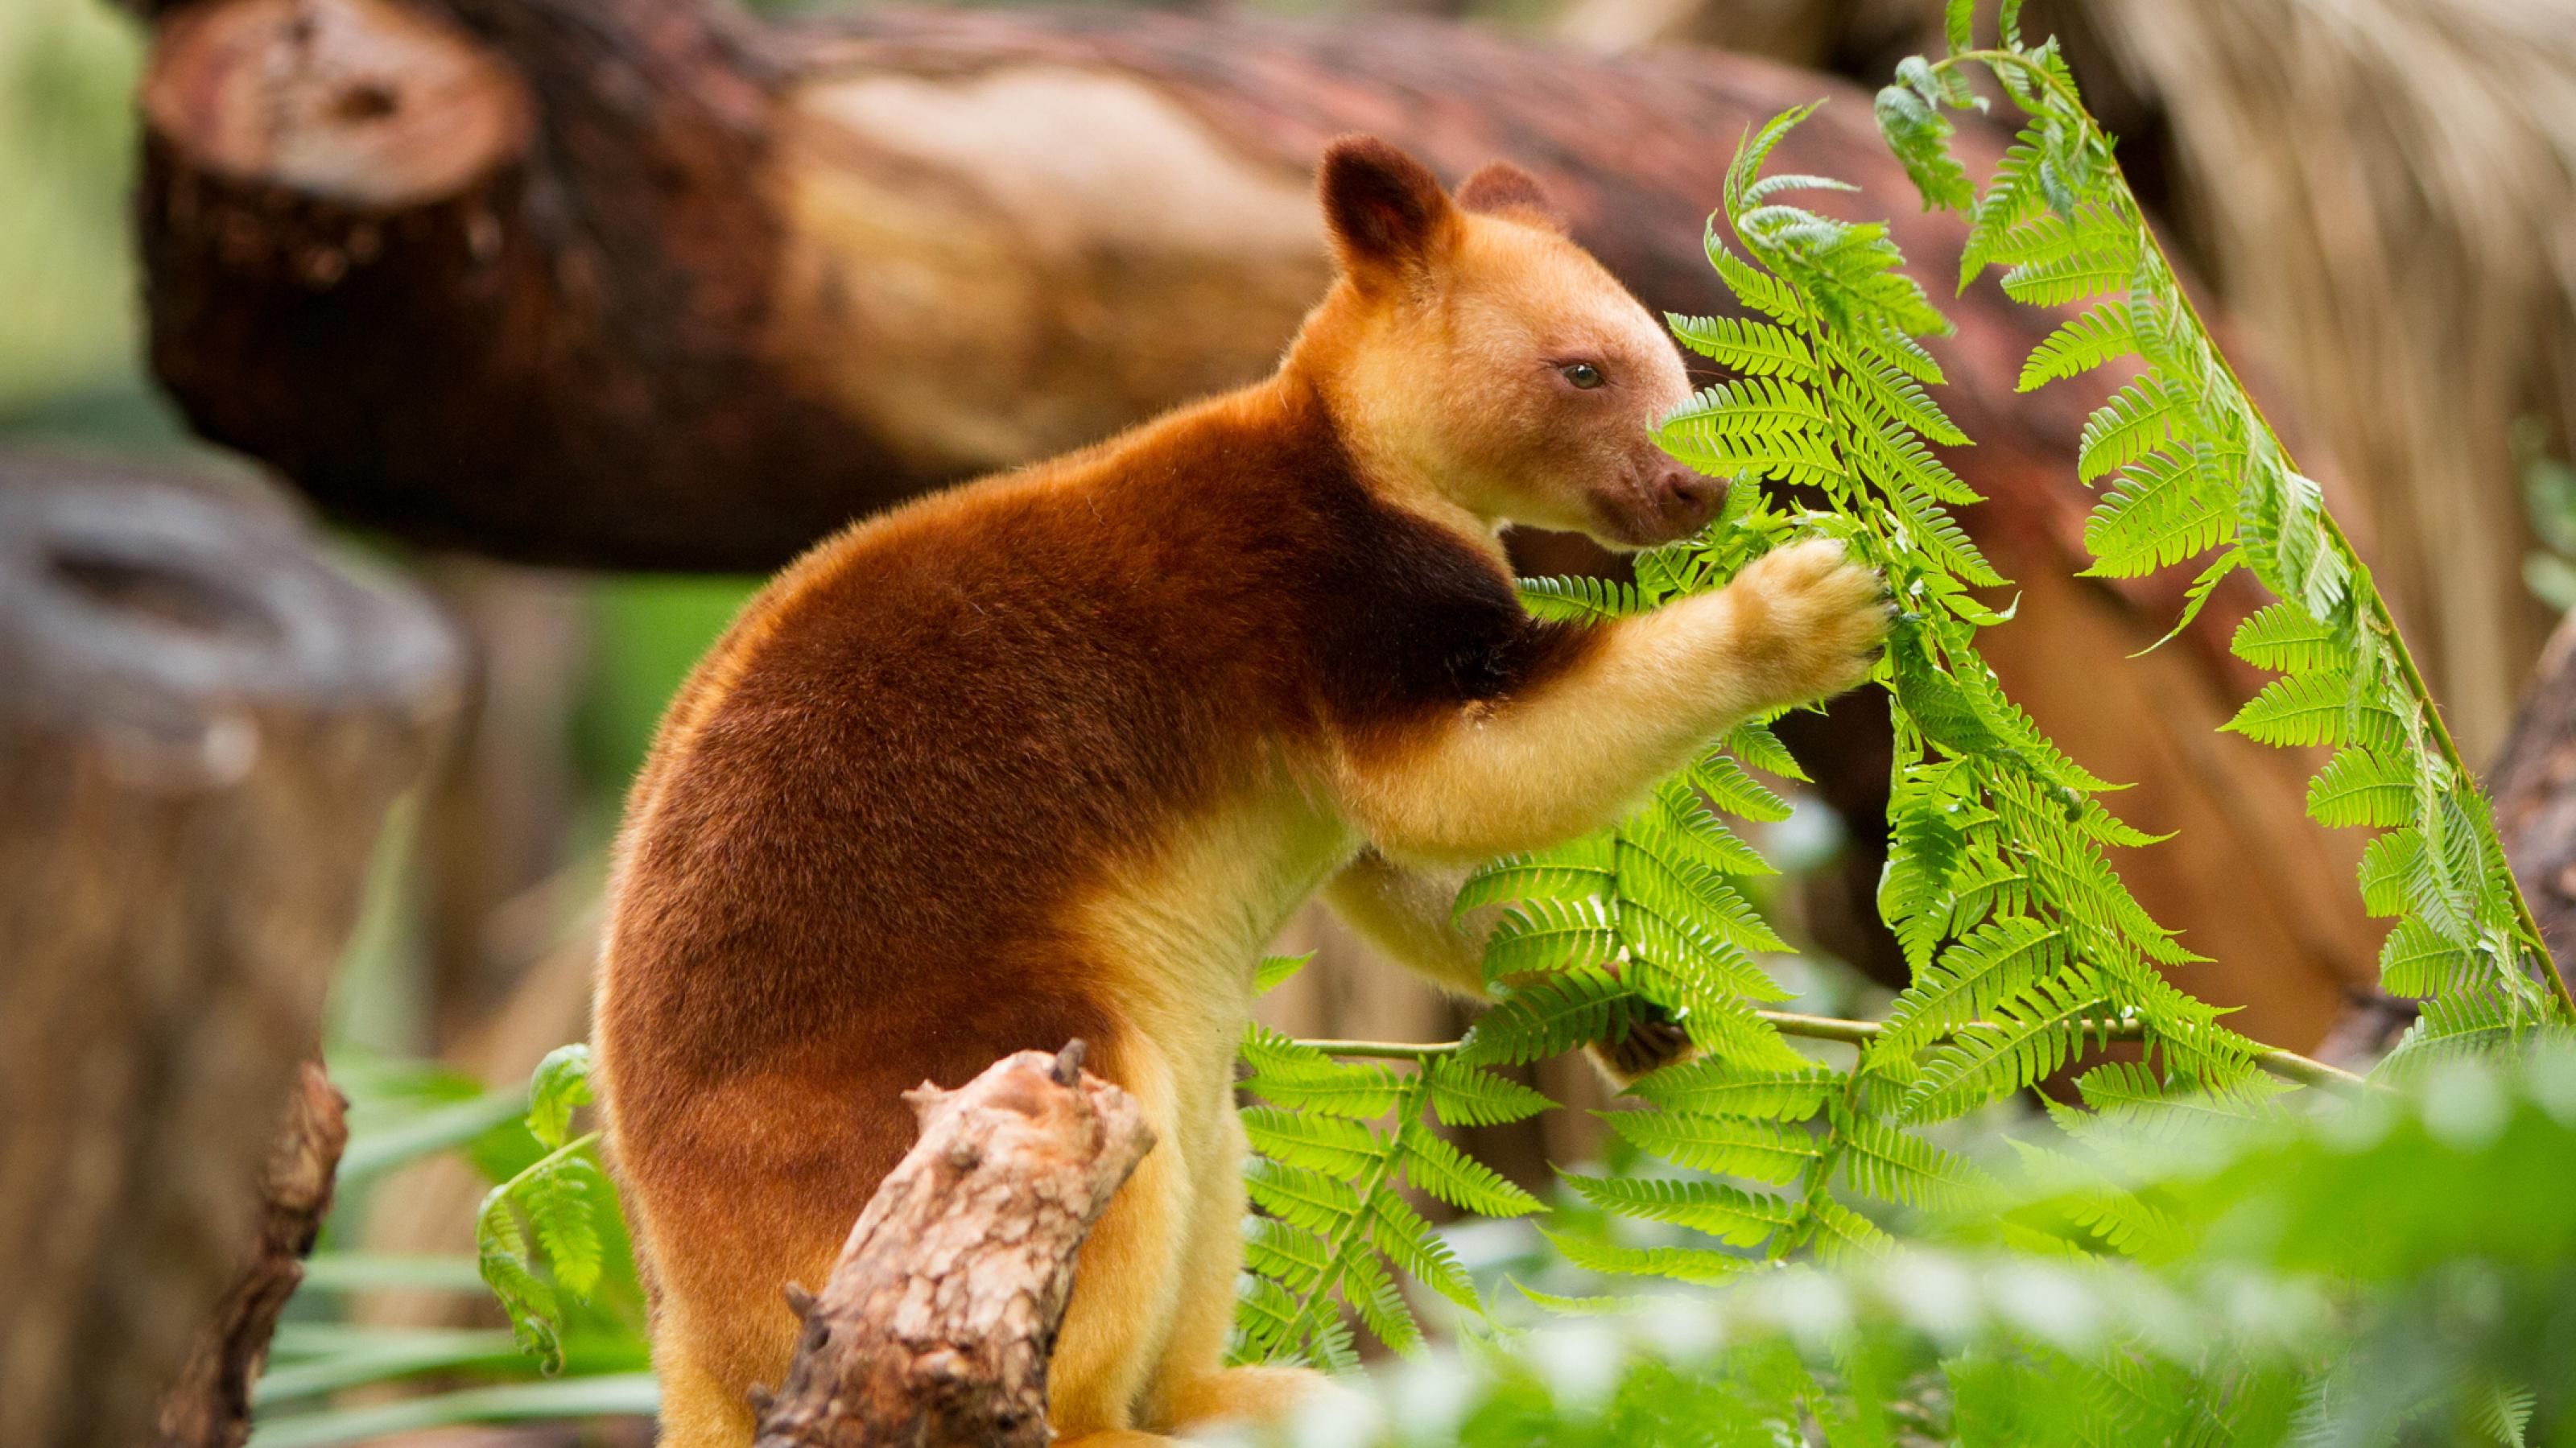 braungelbes Baumkänguru sitzt auf einem Ast und greift mit einer Pfote nach einem grünen Farnwedel.